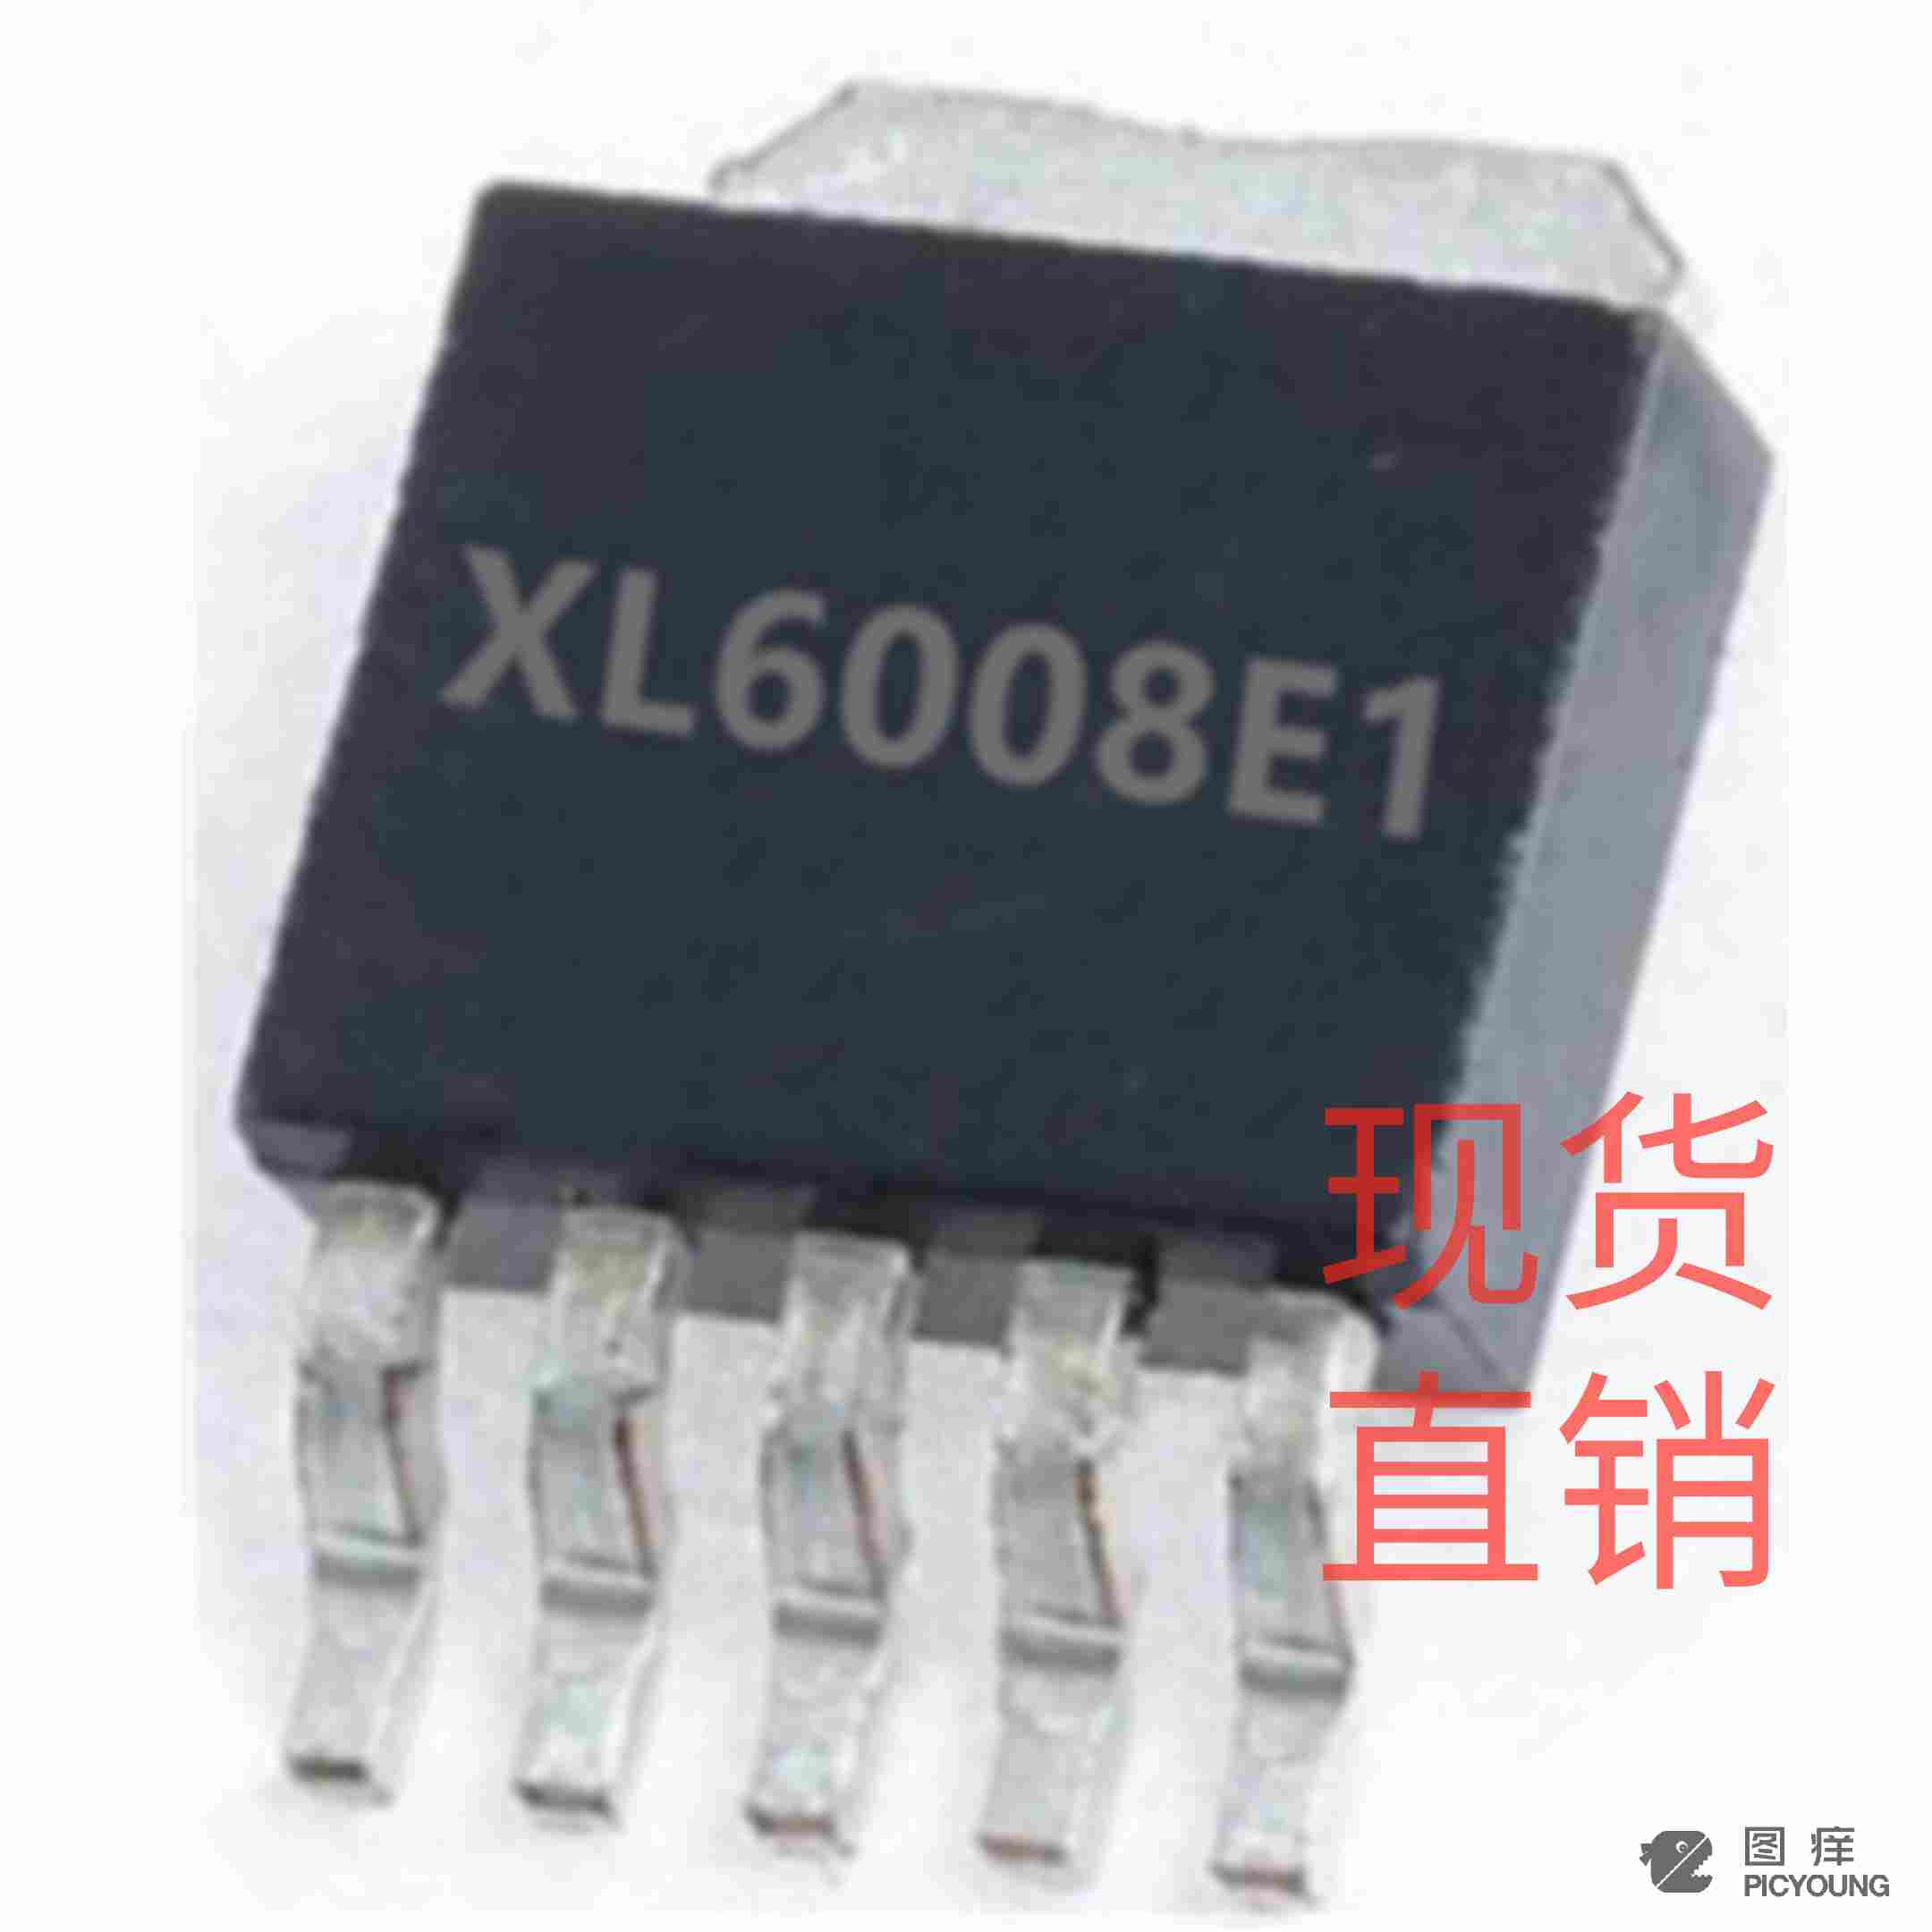 XL6008升压型电源变换器芯片批发